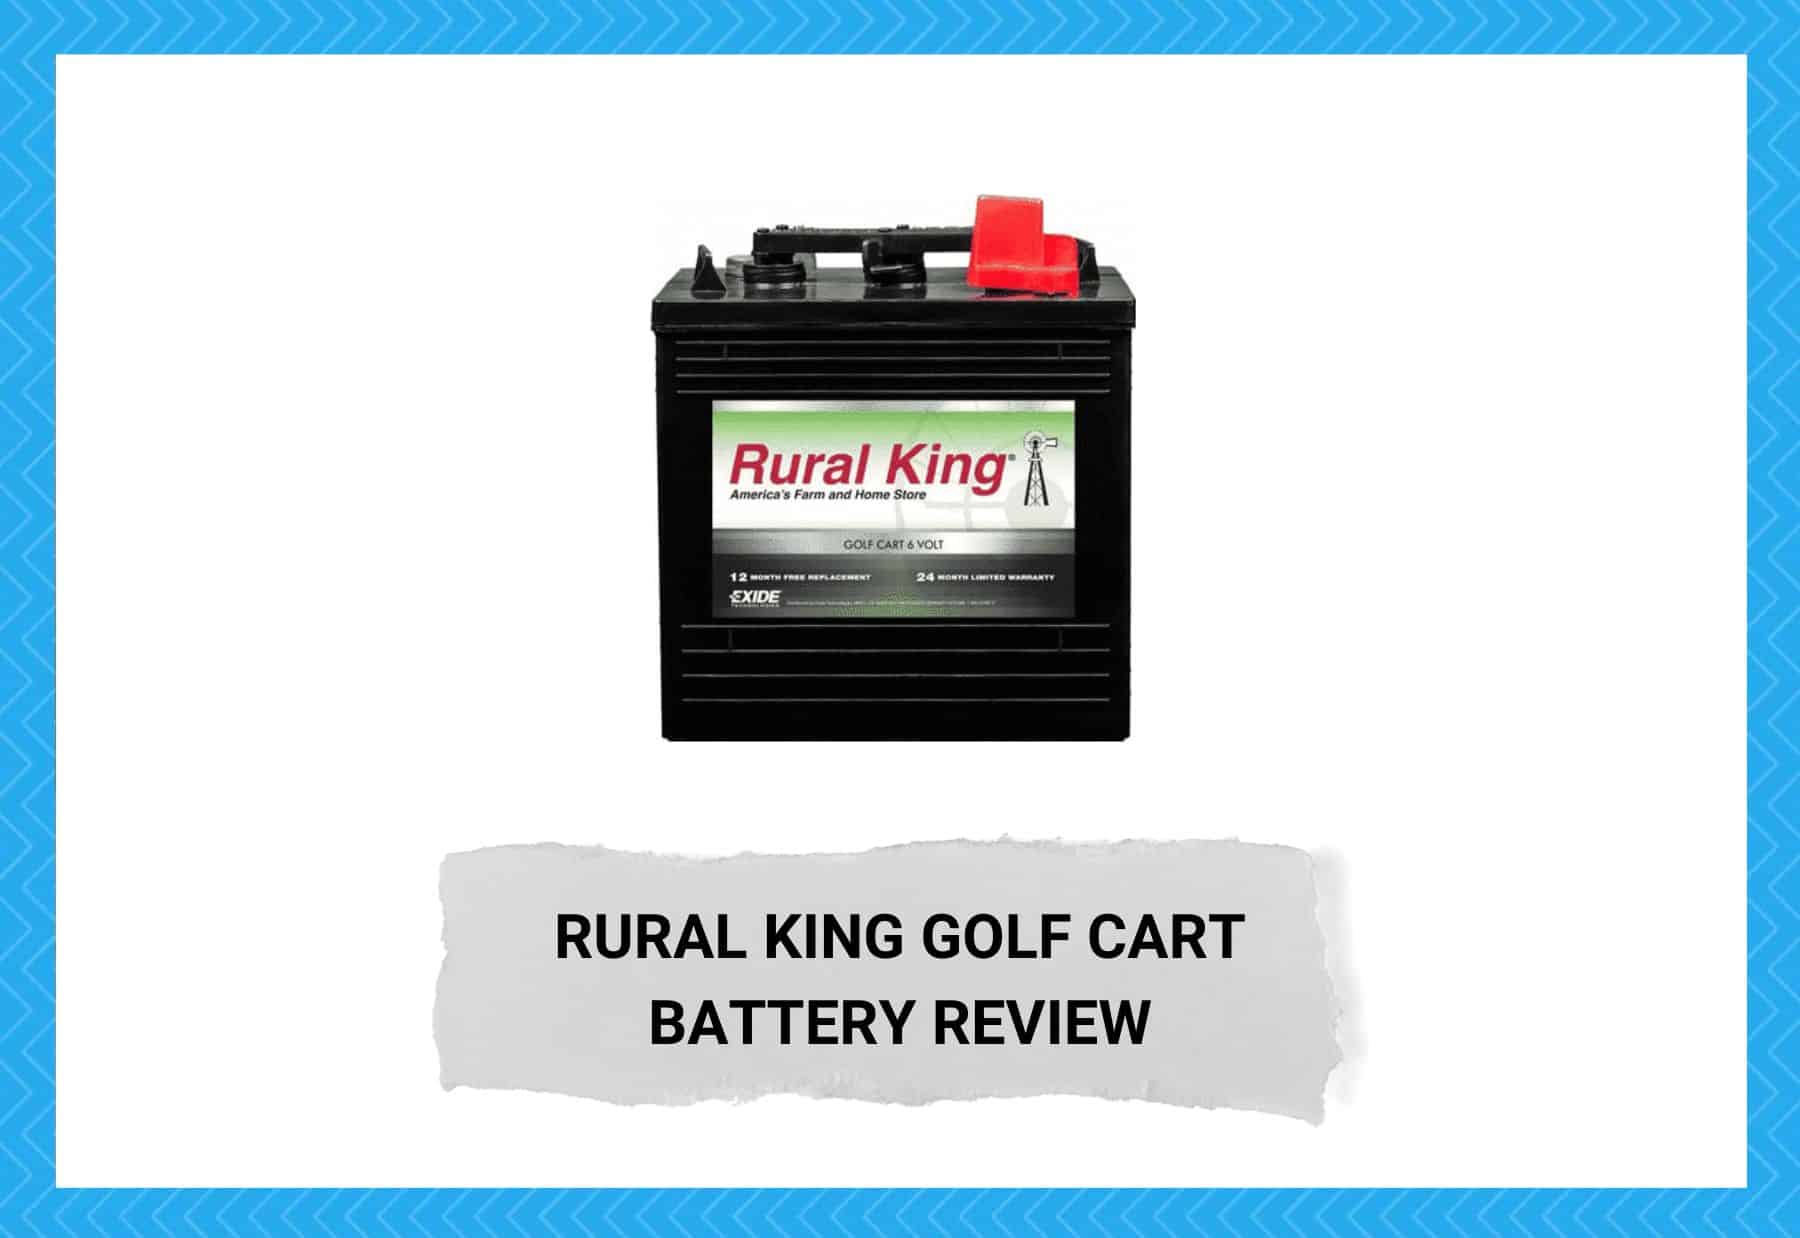 Rural King Golf Cart Battery Review